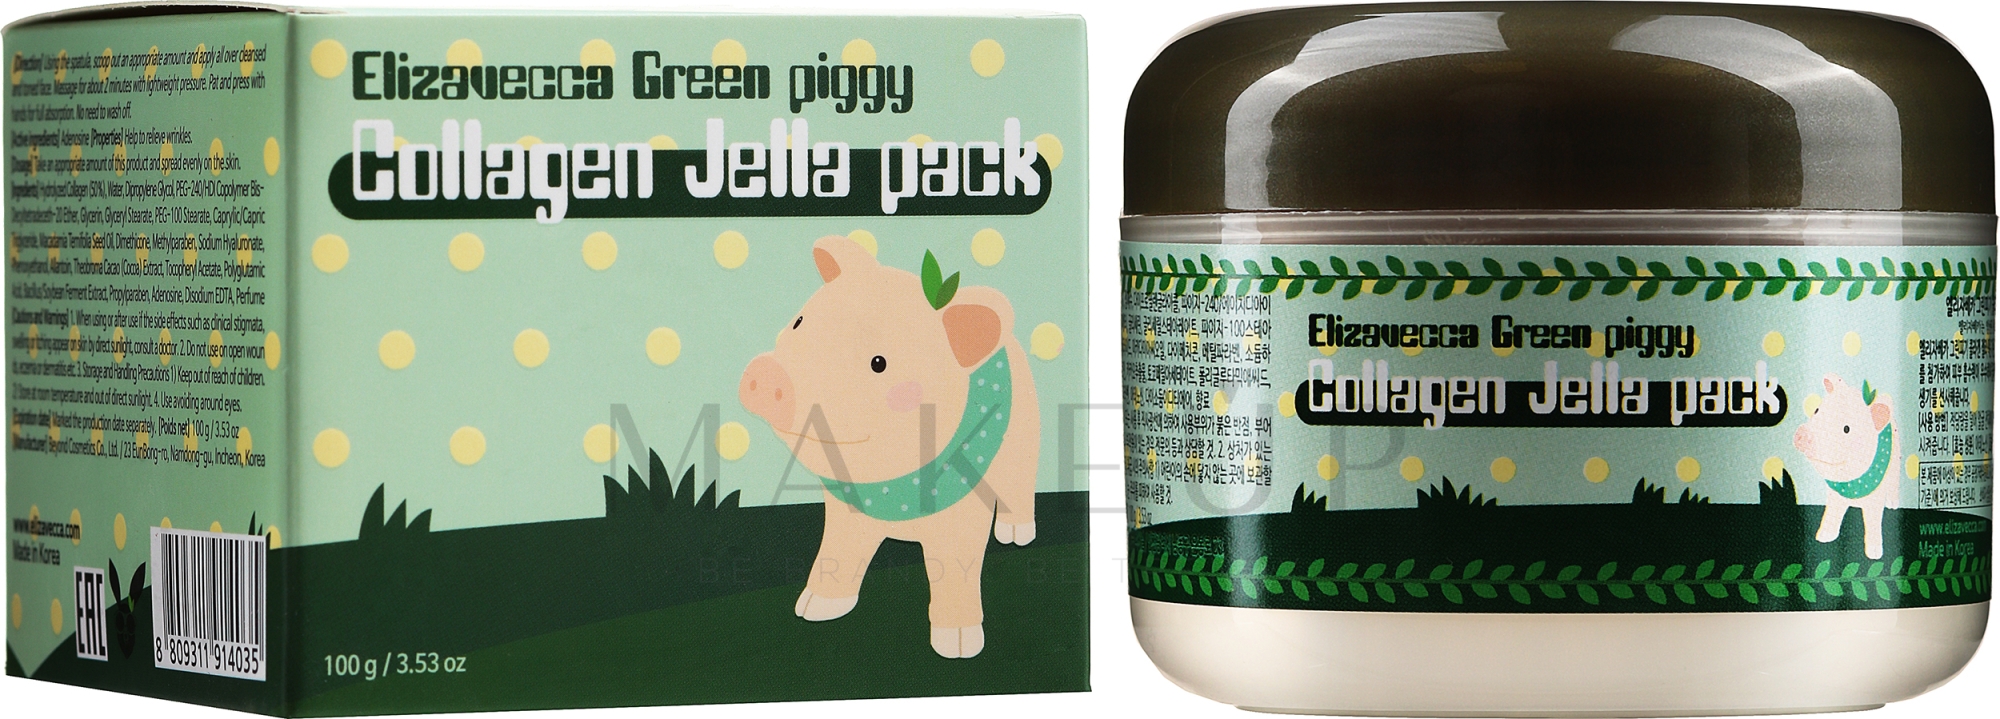 Feuchtigkeitsspendende Gesichtsmaske mit Kollagen - Elizavecca Face Care Green piggy Collagen Jella Pack — Foto 100 g